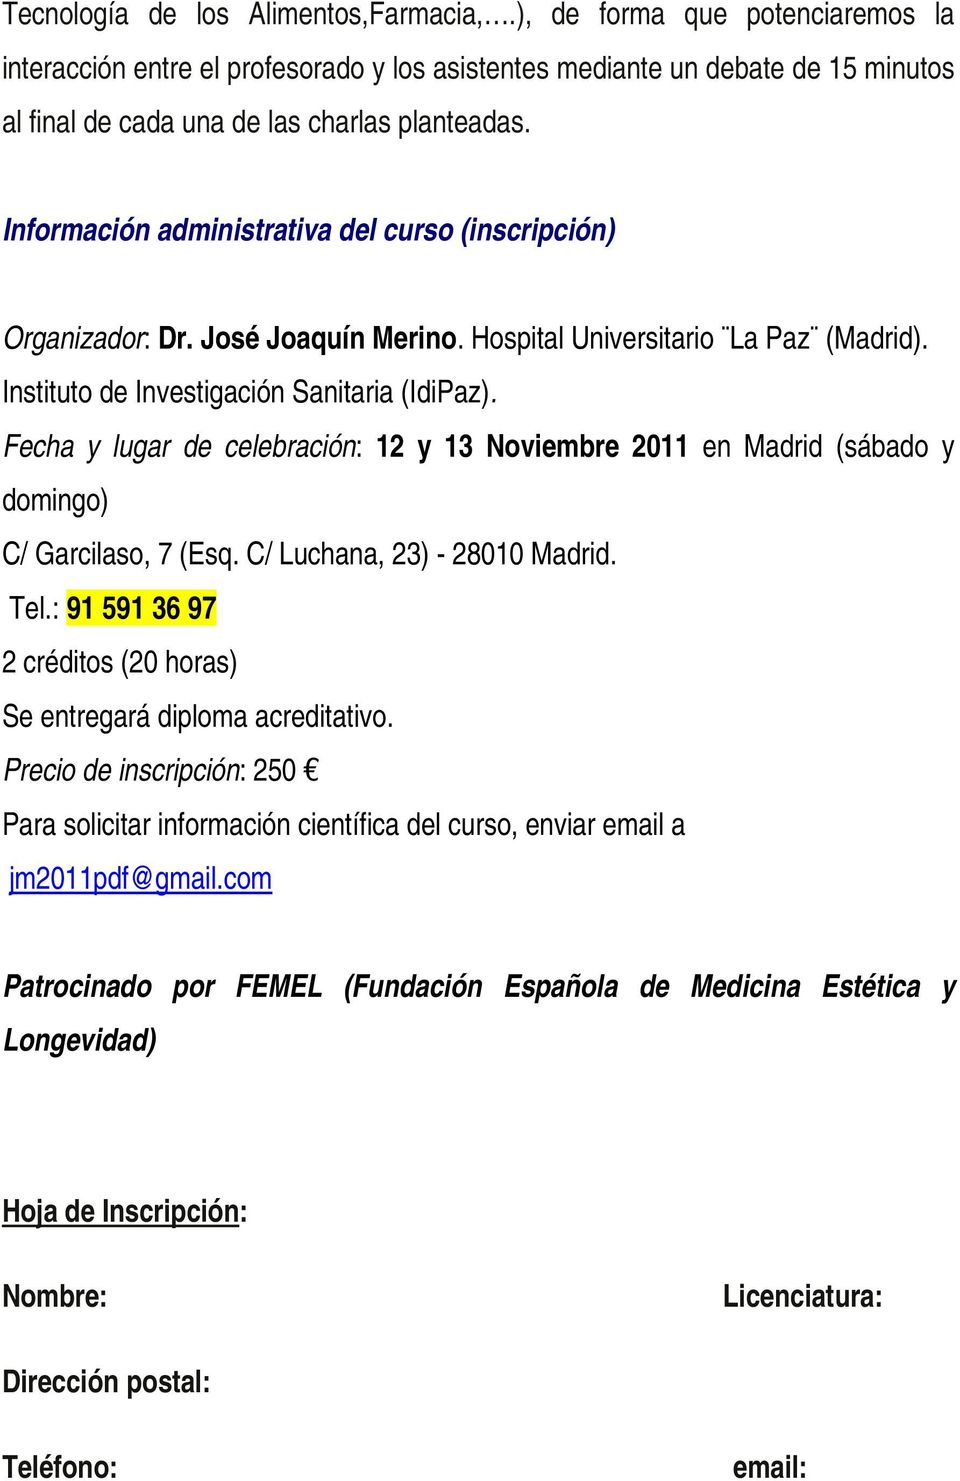 Información administrativa del curso (inscripción) Organizador: Dr. José Joaquín Merino. Hospital Universitario La Paz (Madrid). Instituto de Investigación Sanitaria (IdiPaz).